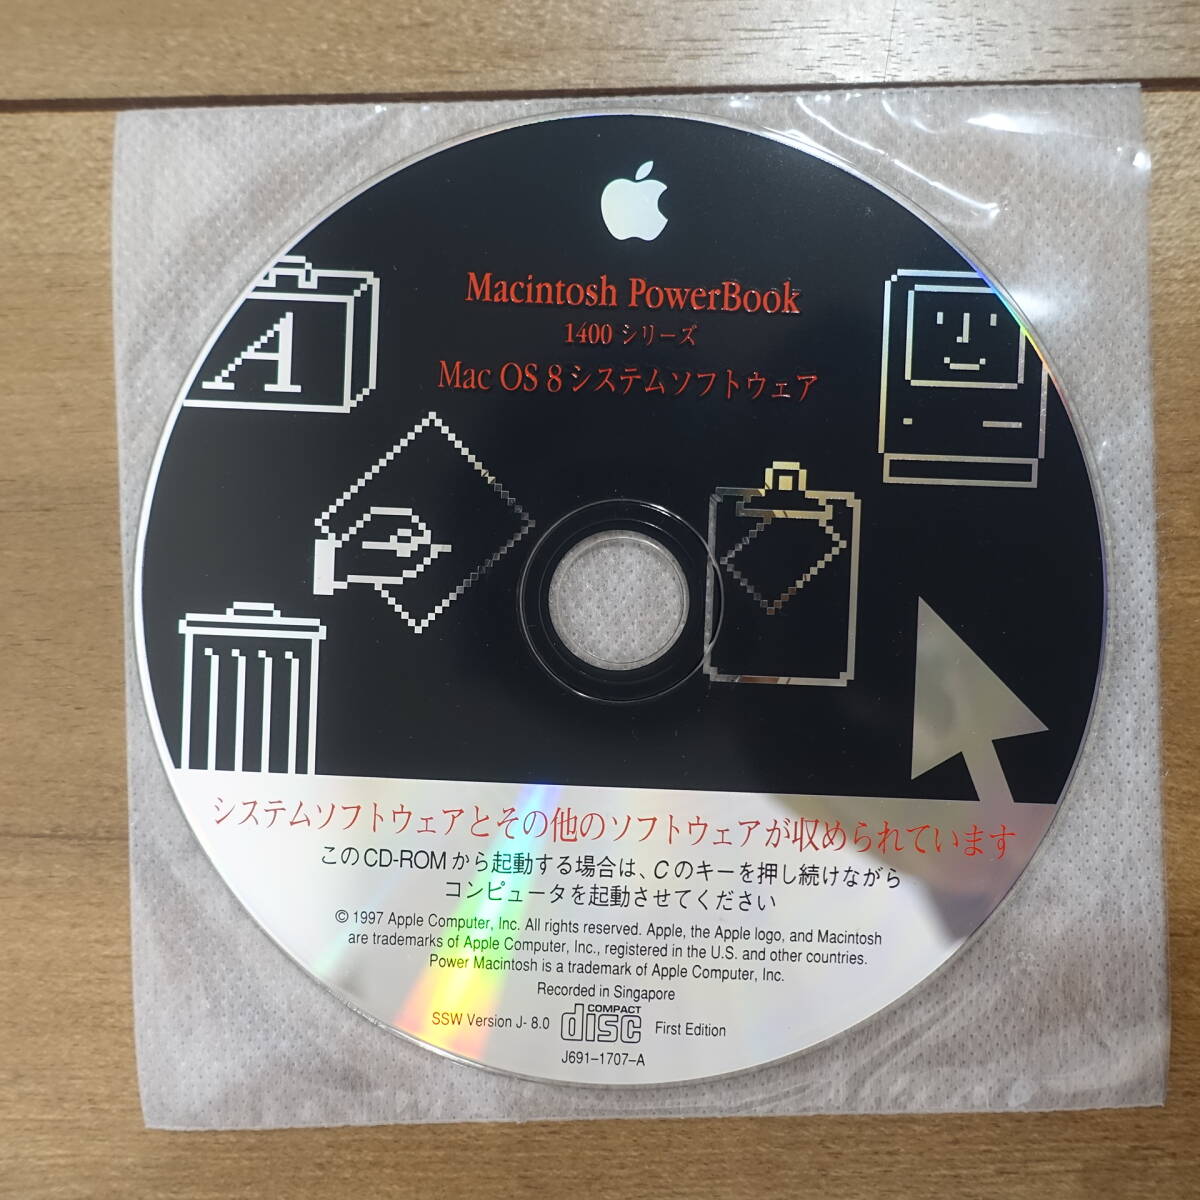 Apple Mac OS 8 система программное обеспечение Macintosh PowerBook CD